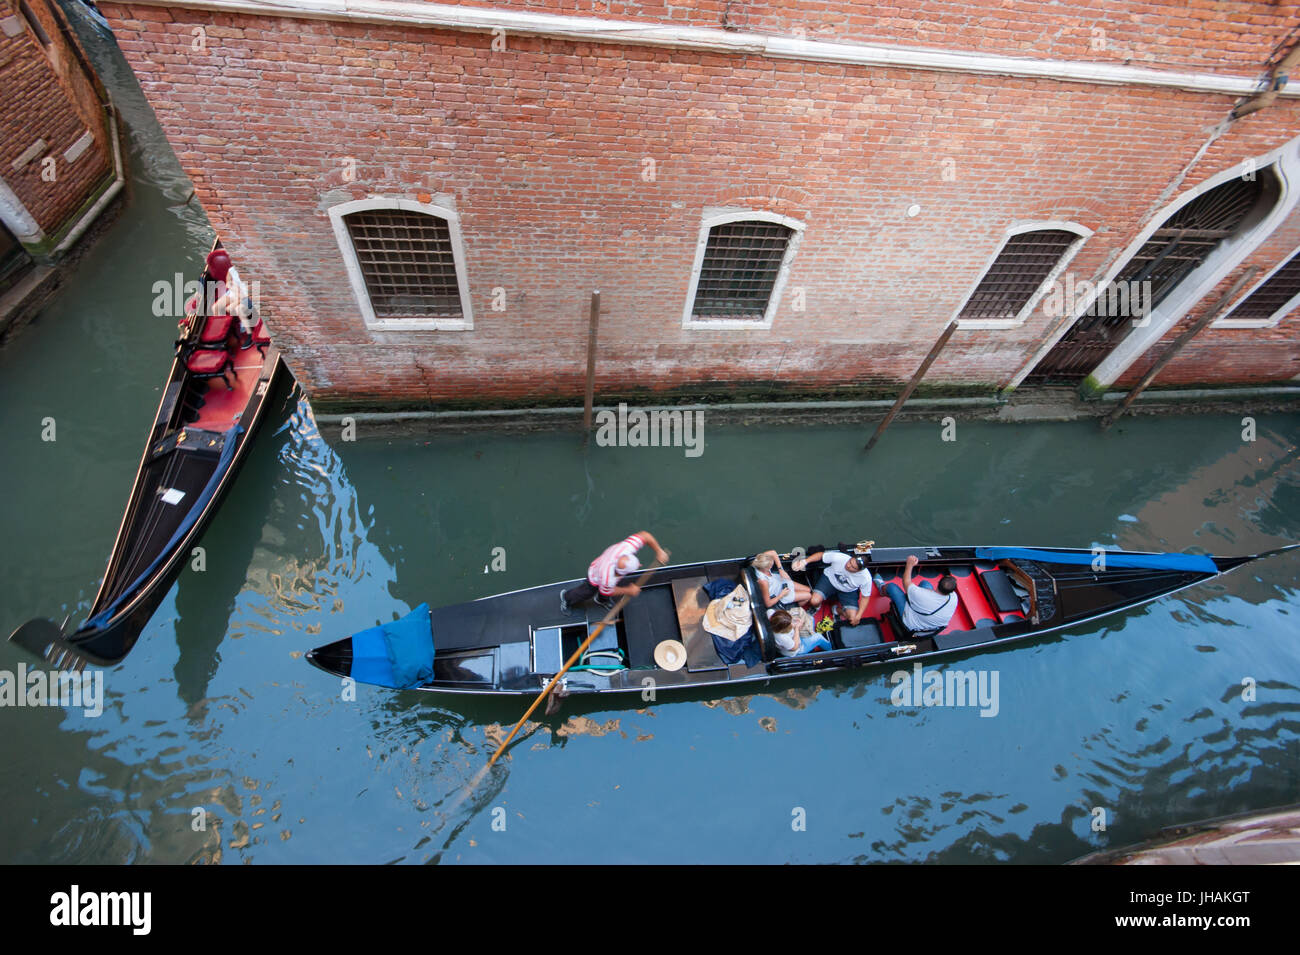 Venedig - zwei Gondeln mit Touristen, die von oben gesehen folgen einander in einem engen Kanal in das Sestiere San Marco Bereich Stockfoto